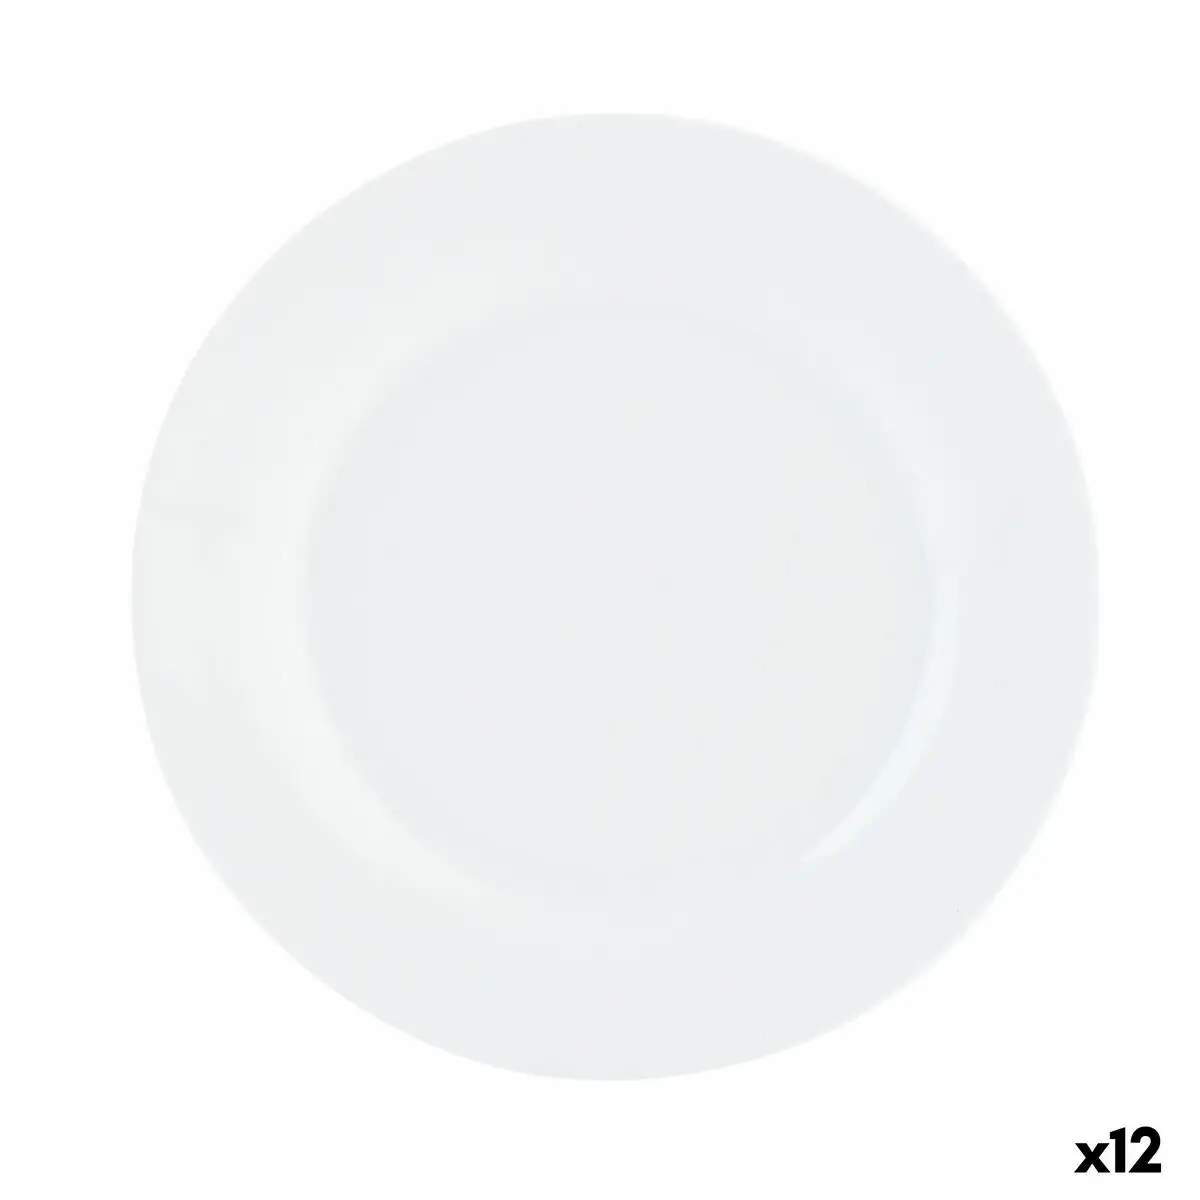 Assiette plate quid basic blanc ceramique 23 cm 12 unites _5237. DIAYTAR SENEGAL - L'Univers de l'Élégance Accessible. Plongez dans notre catalogue et choisissez des produits qui allient sophistication et accessibilité pour un shopping exquis.